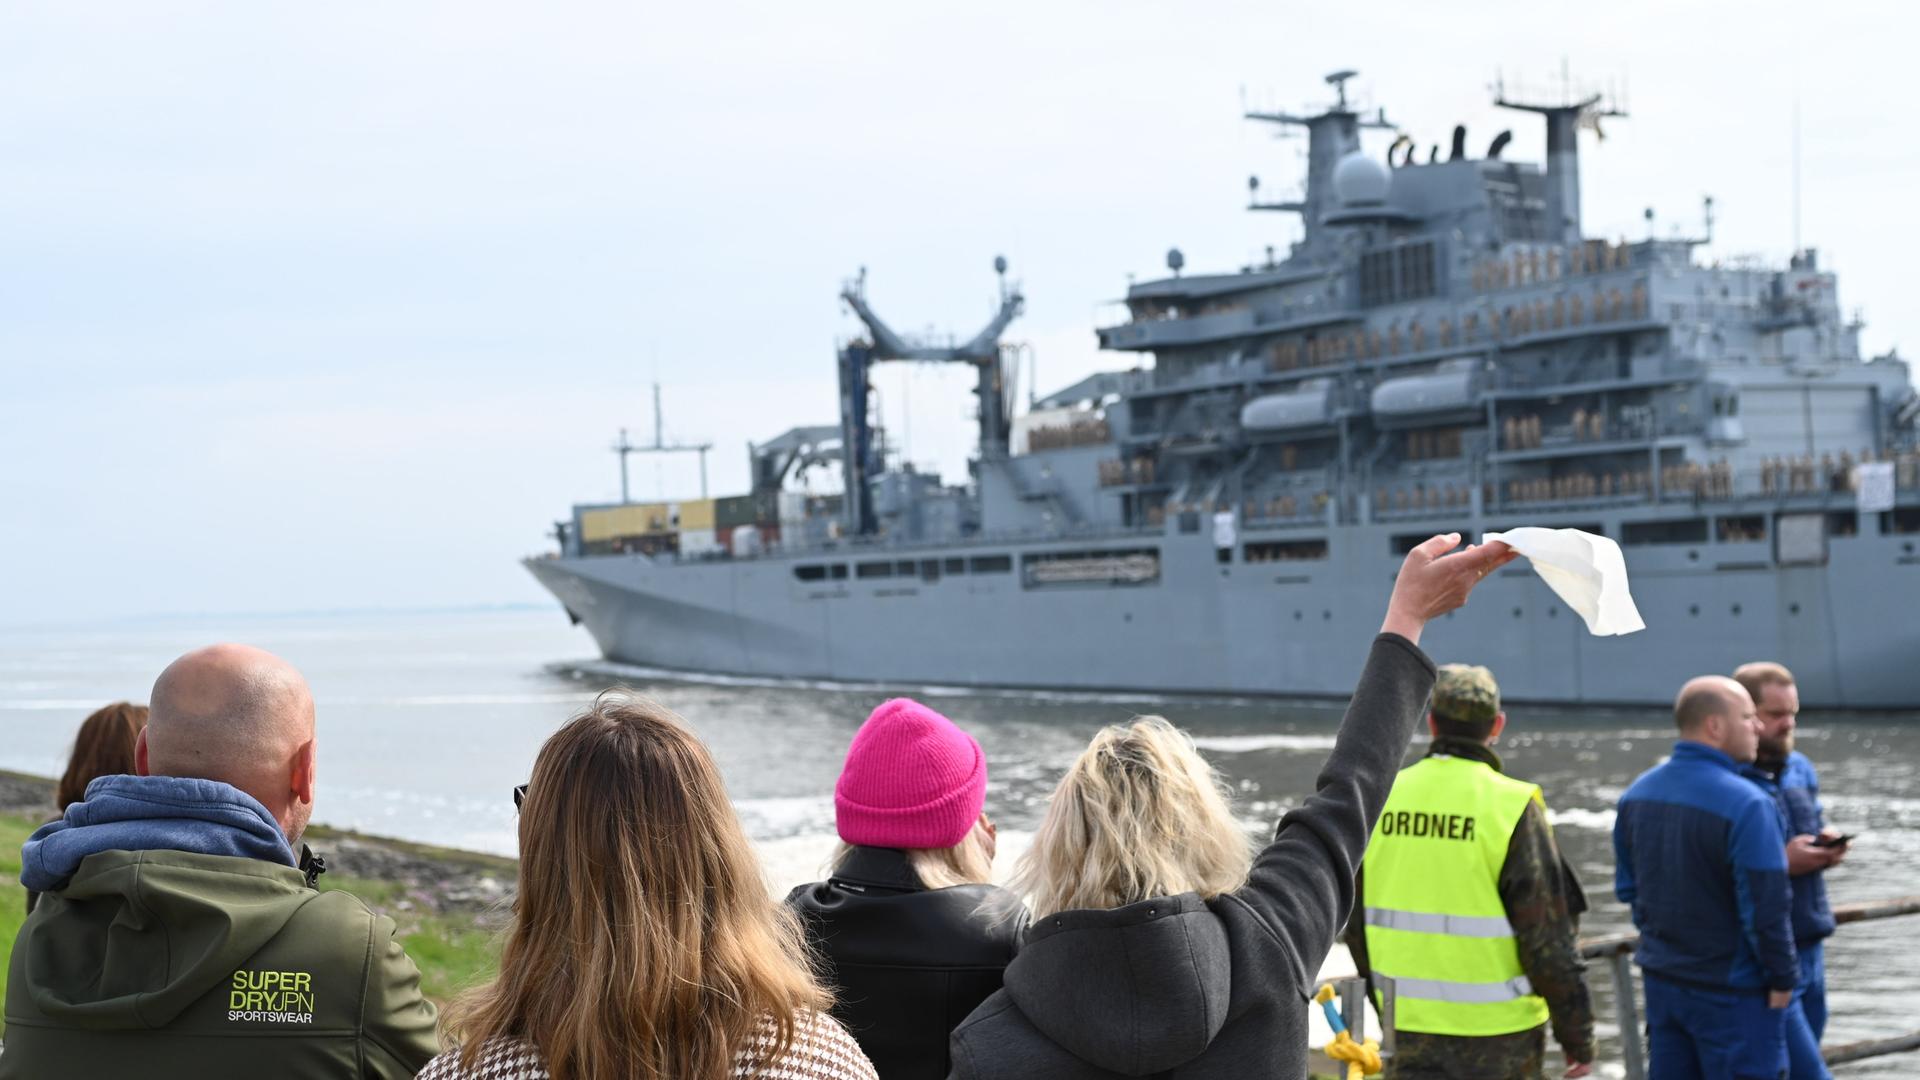 Ein Bundeswehrschiff verlässt einen Hafen, Menschen sehen ihm nach, eine Frau winkt mit einem Taschentuch.